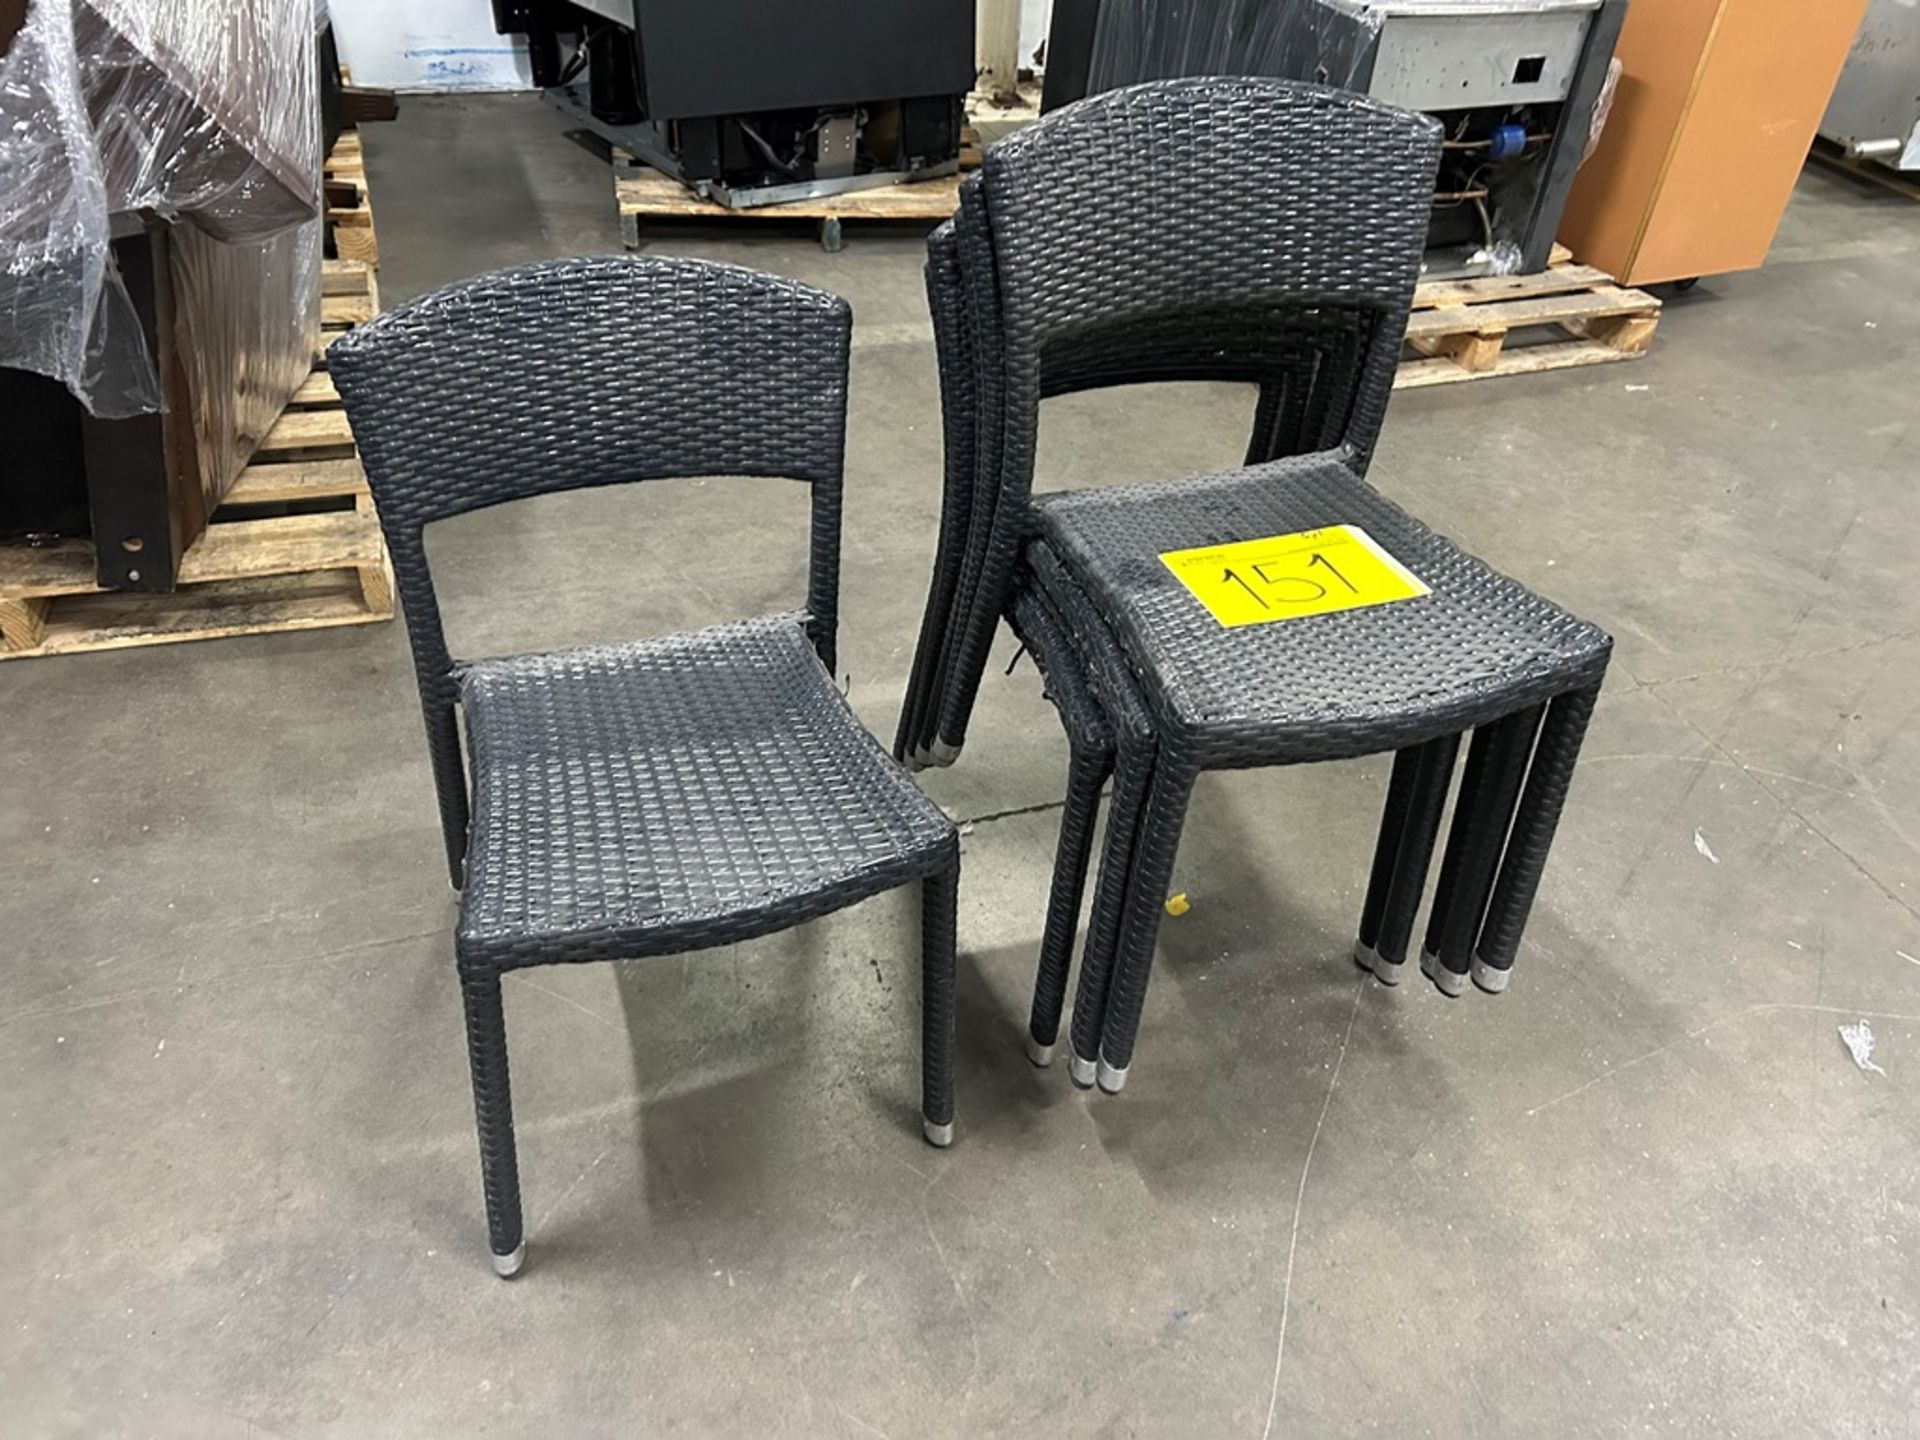 5 sillas de tipo ratán, color negro (Equipo usado) - Image 2 of 5